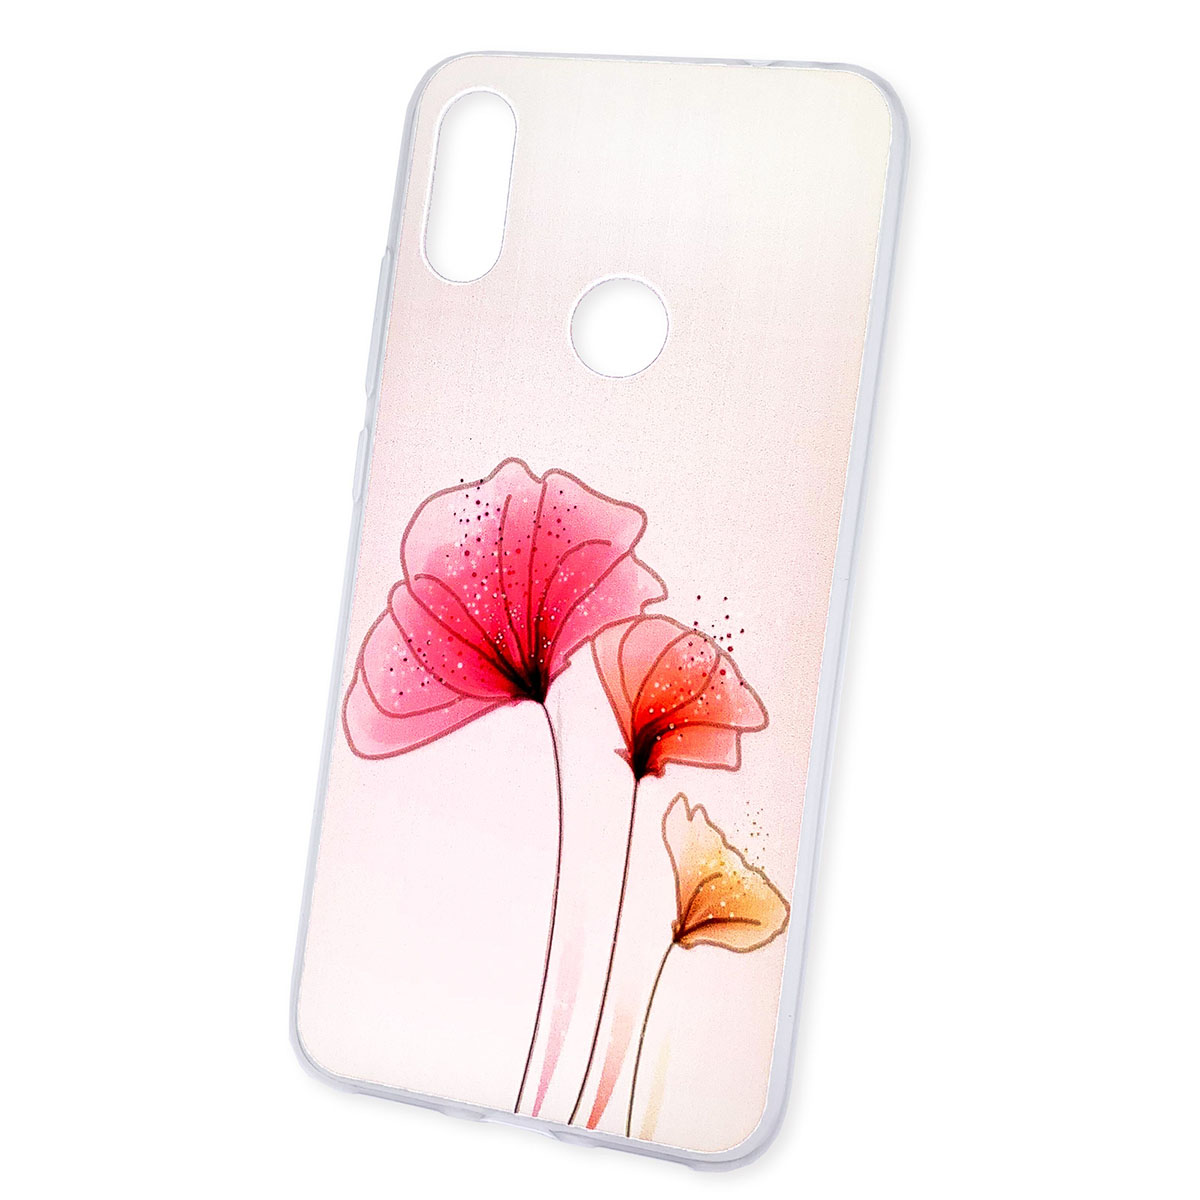 Чехол накладка для XIAOMI Redmi Note 7, Note 7 Pro, силикон, рисунок цветы.